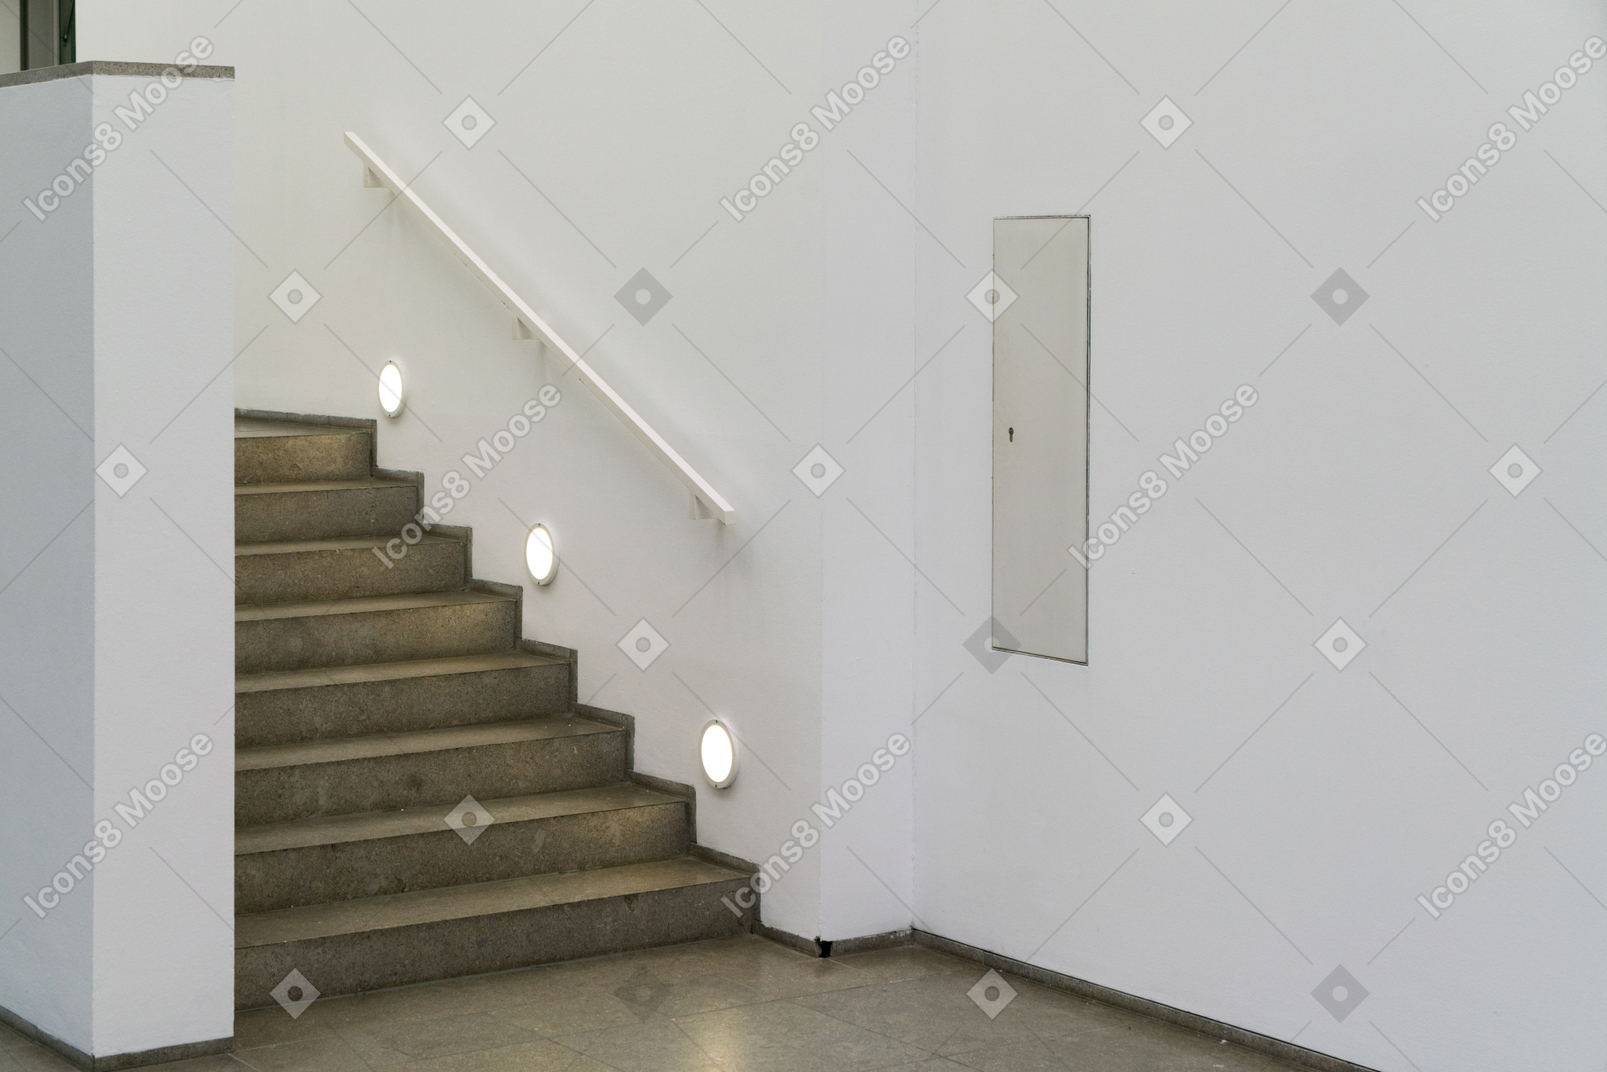 白色走廊的楼梯照明